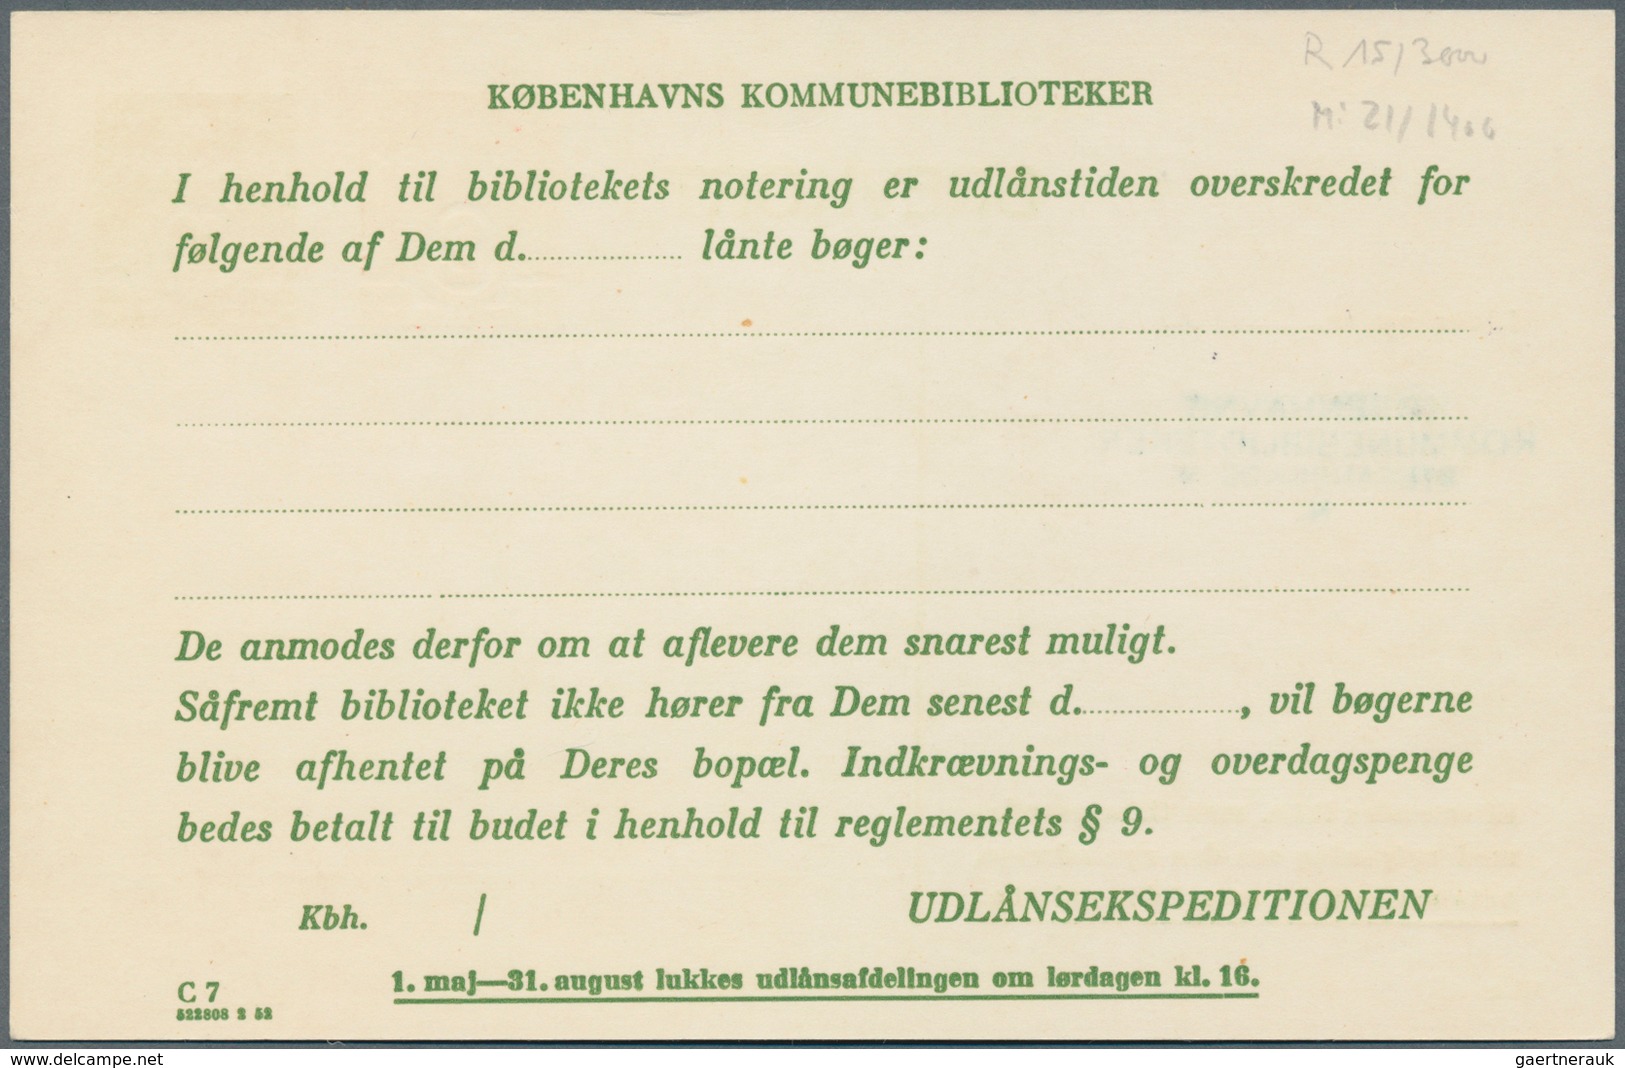 Dänemark - Ganzsachen: 1953 Unused Postal Stationery Card With Additional Printing Of 2 Öre Next To - Ganzsachen